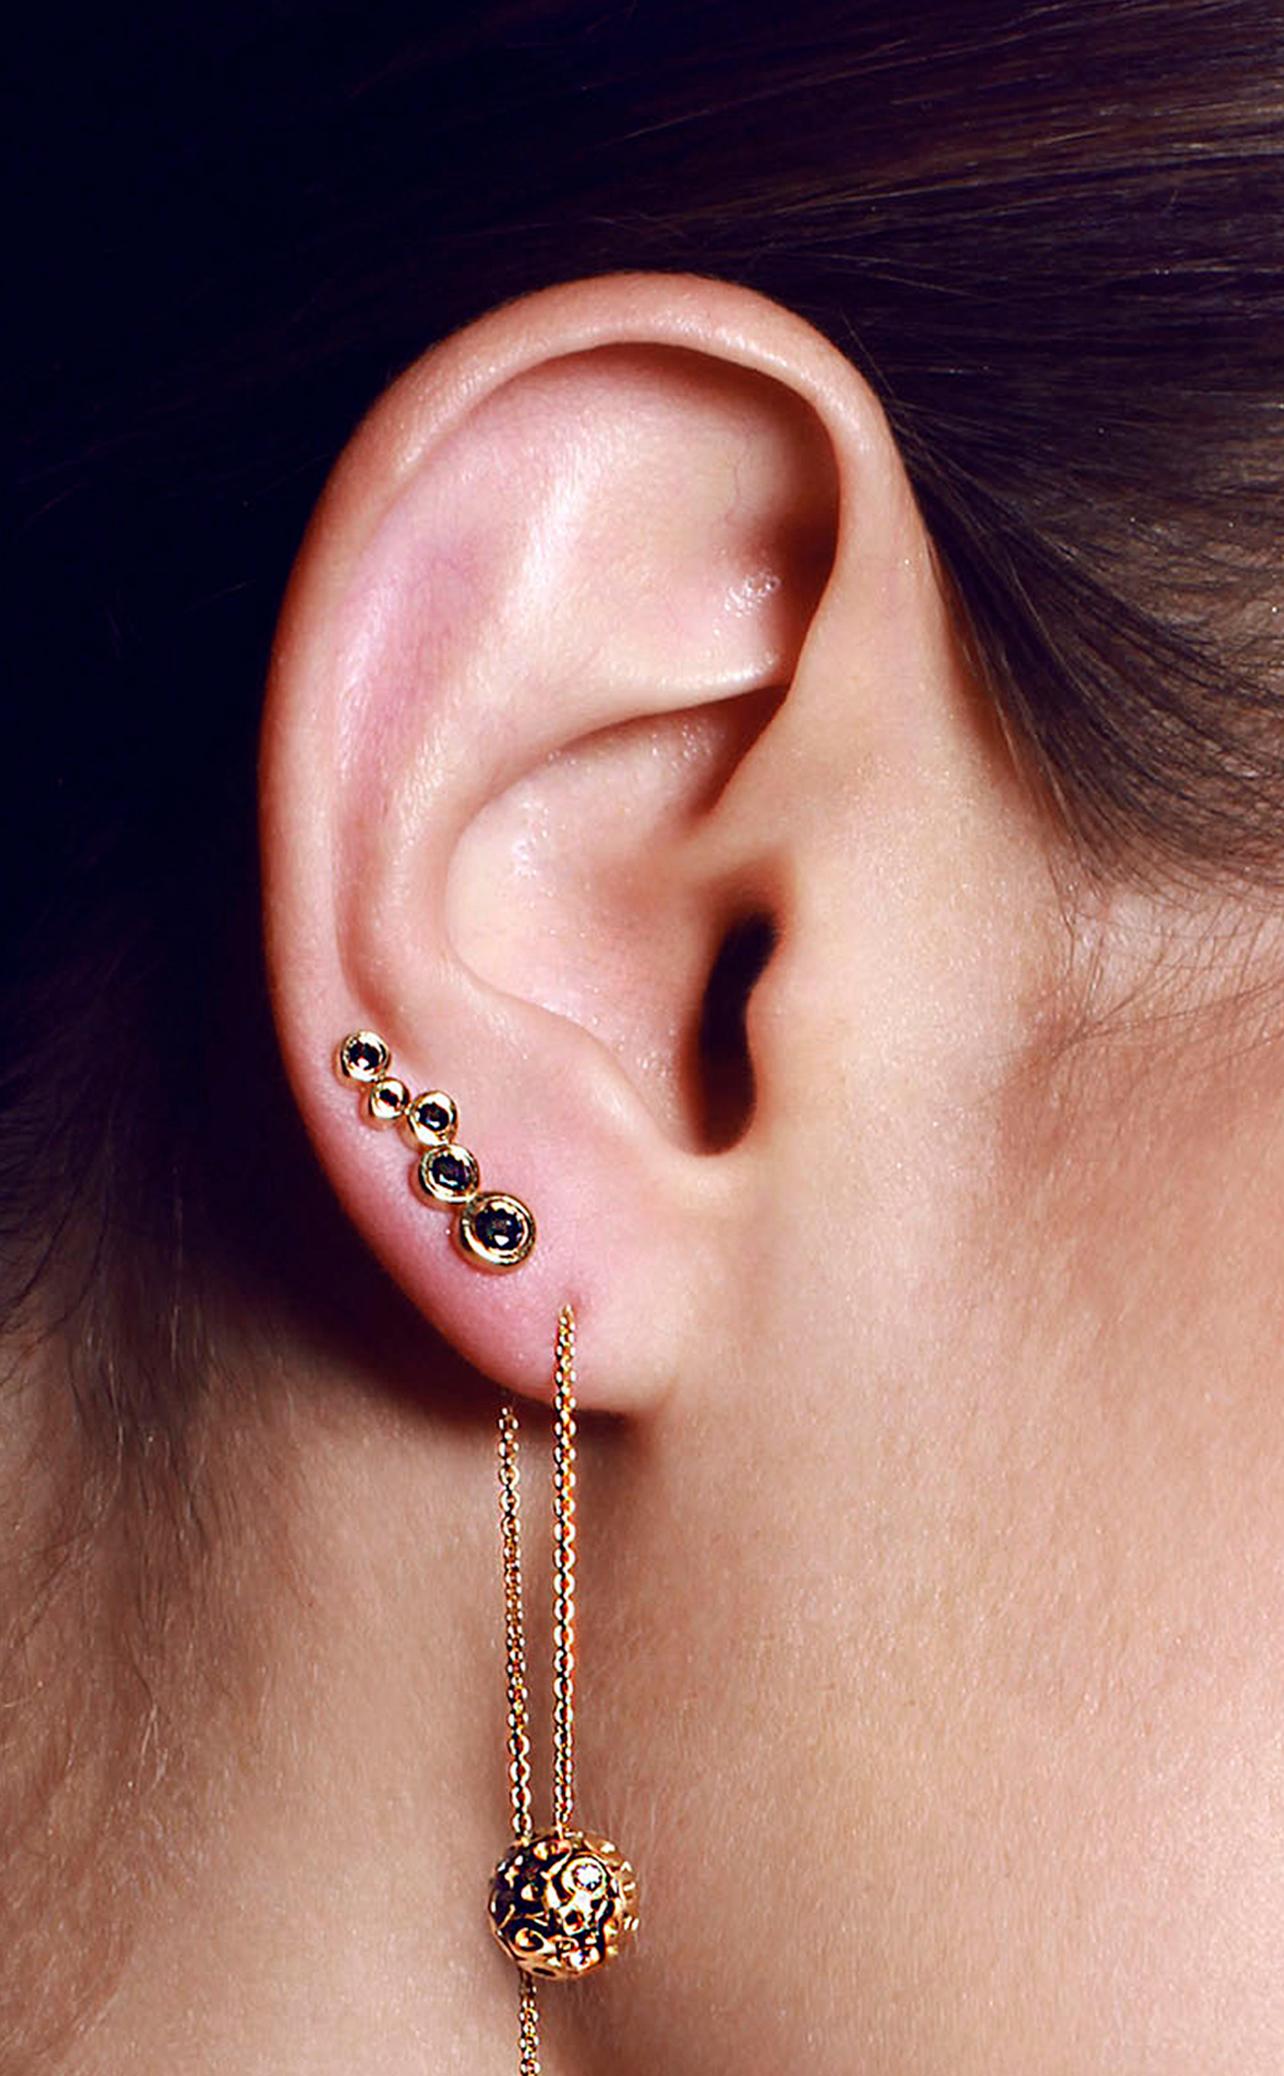 Tragen Sie diesen langen, linearen Ohrring mit herabrieselnden schwarzen Diamanten, um die
zwischen den alltäglichen einfachen Ohrsteckern.

Inspiriert von der Betrachtung des Lebens im Querschnitt, als ob man einen Baum aufschneidet, um die